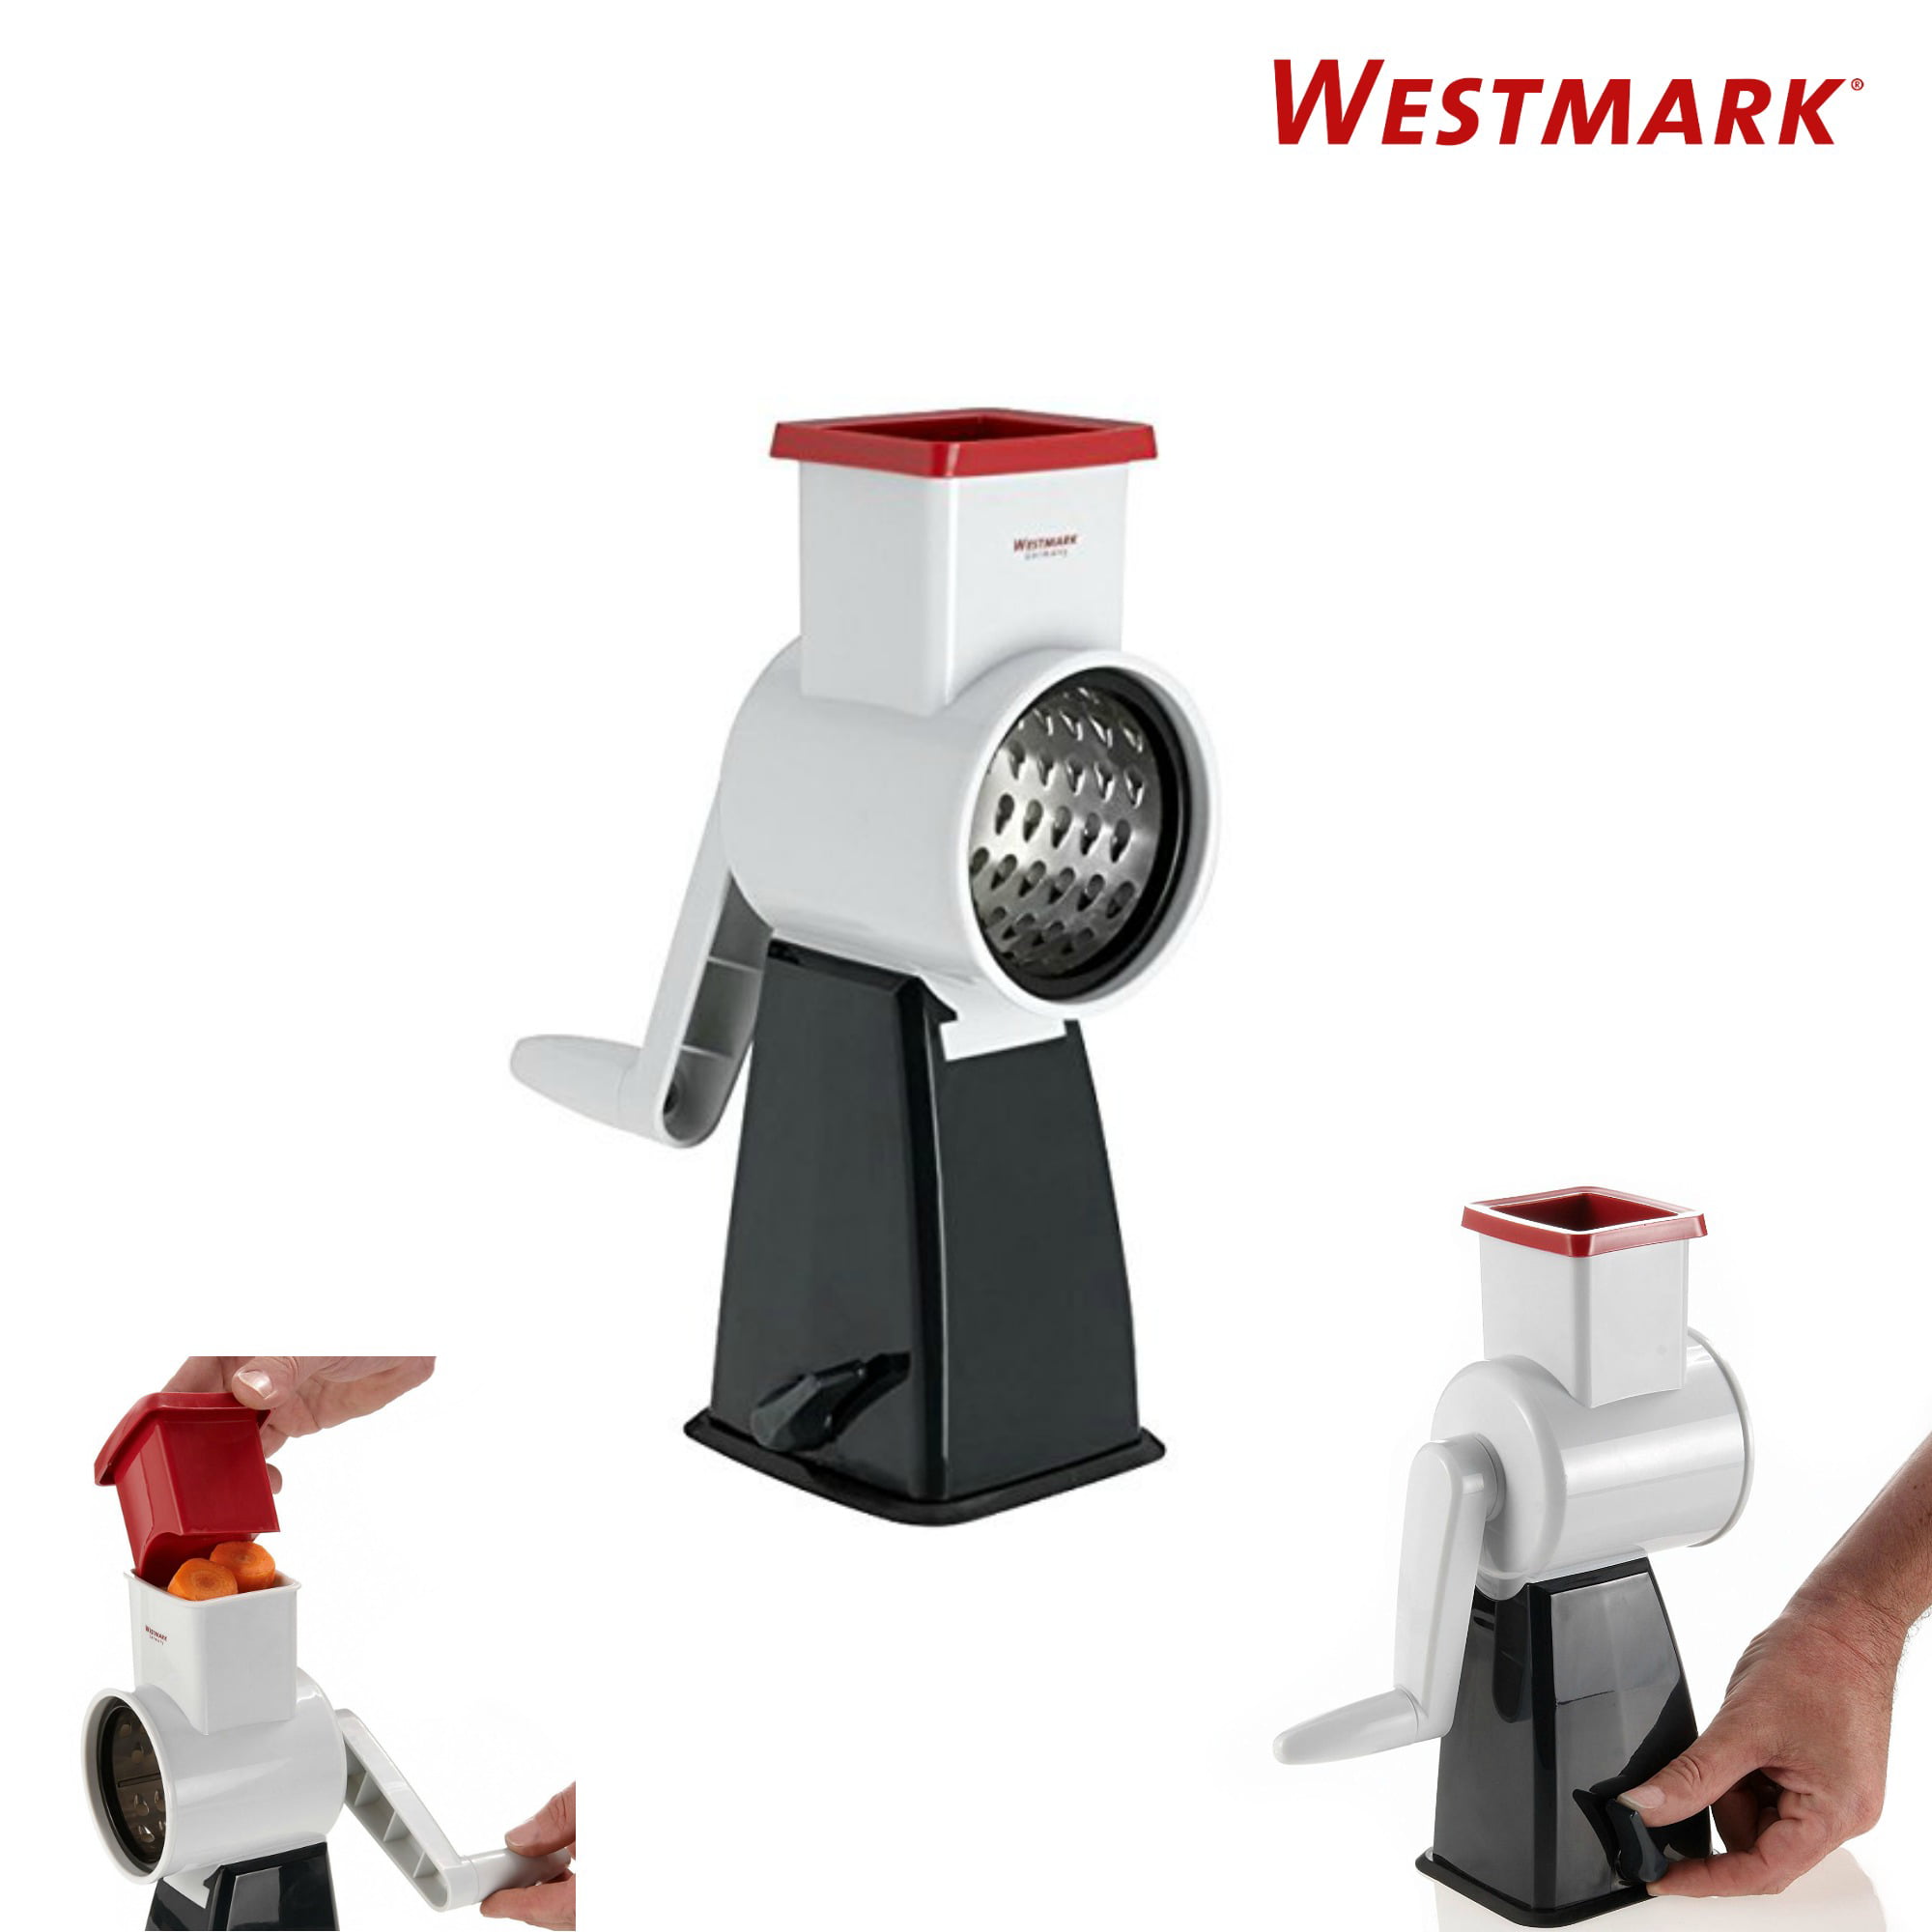 Hand crank grater - Westmark